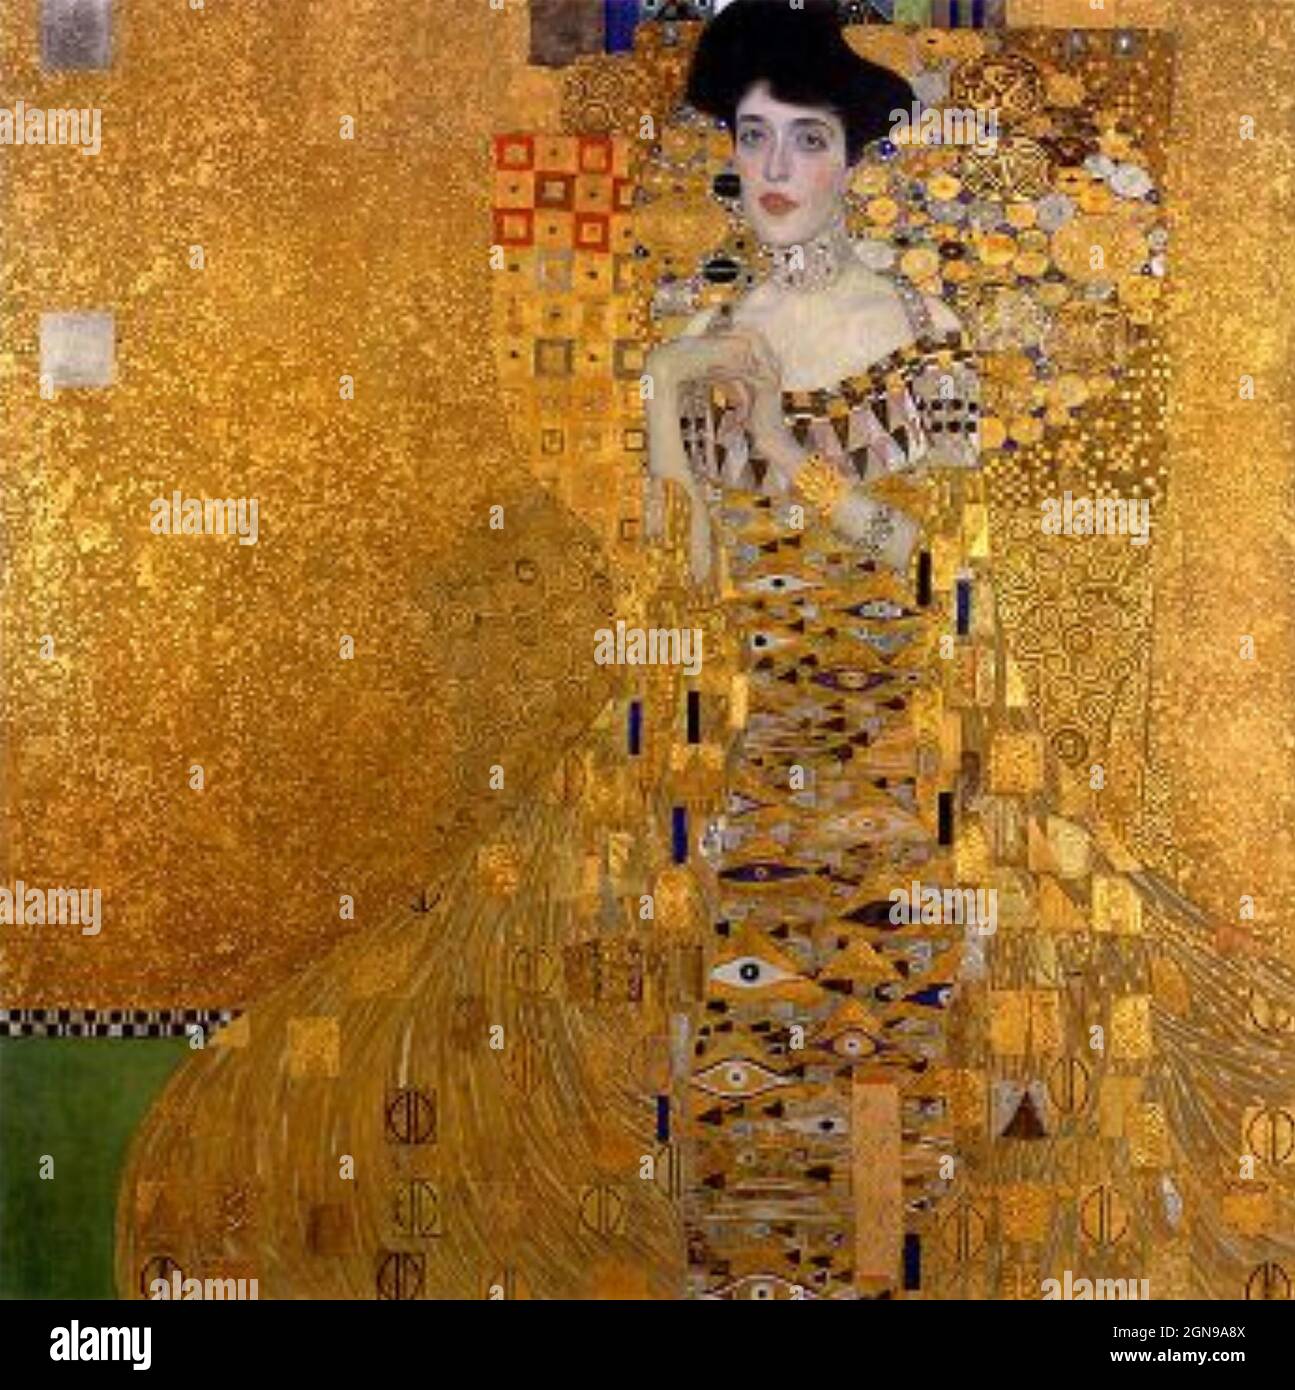 RITRATTO DI ADELE BLOCH-BAUER i dipinto tra il 1903 e il 1907 dall'artista austriaco Gustav Klimt (1862-1918) tenuto nella Neue Galerie di New York. Foto Stock